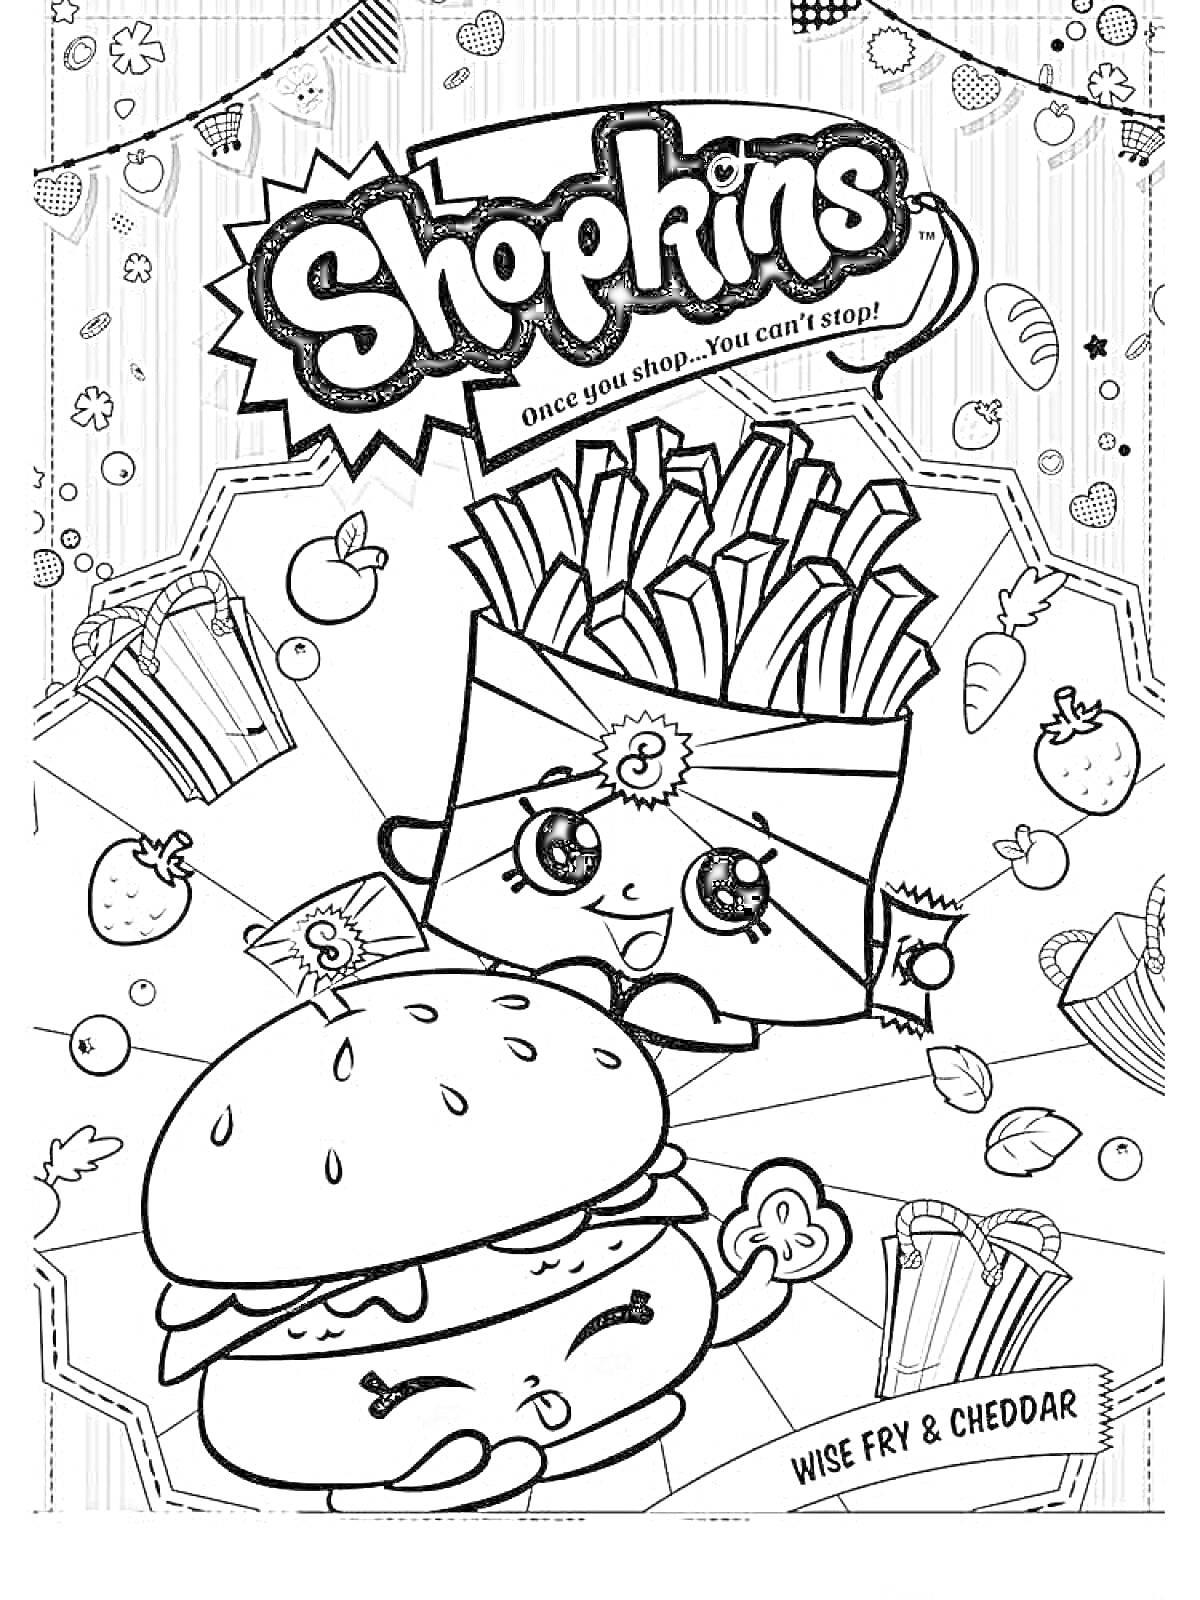 Раскраска Wise Fry & Cheddar из Шопкинс с картофелем фри, гамбургером и сырами